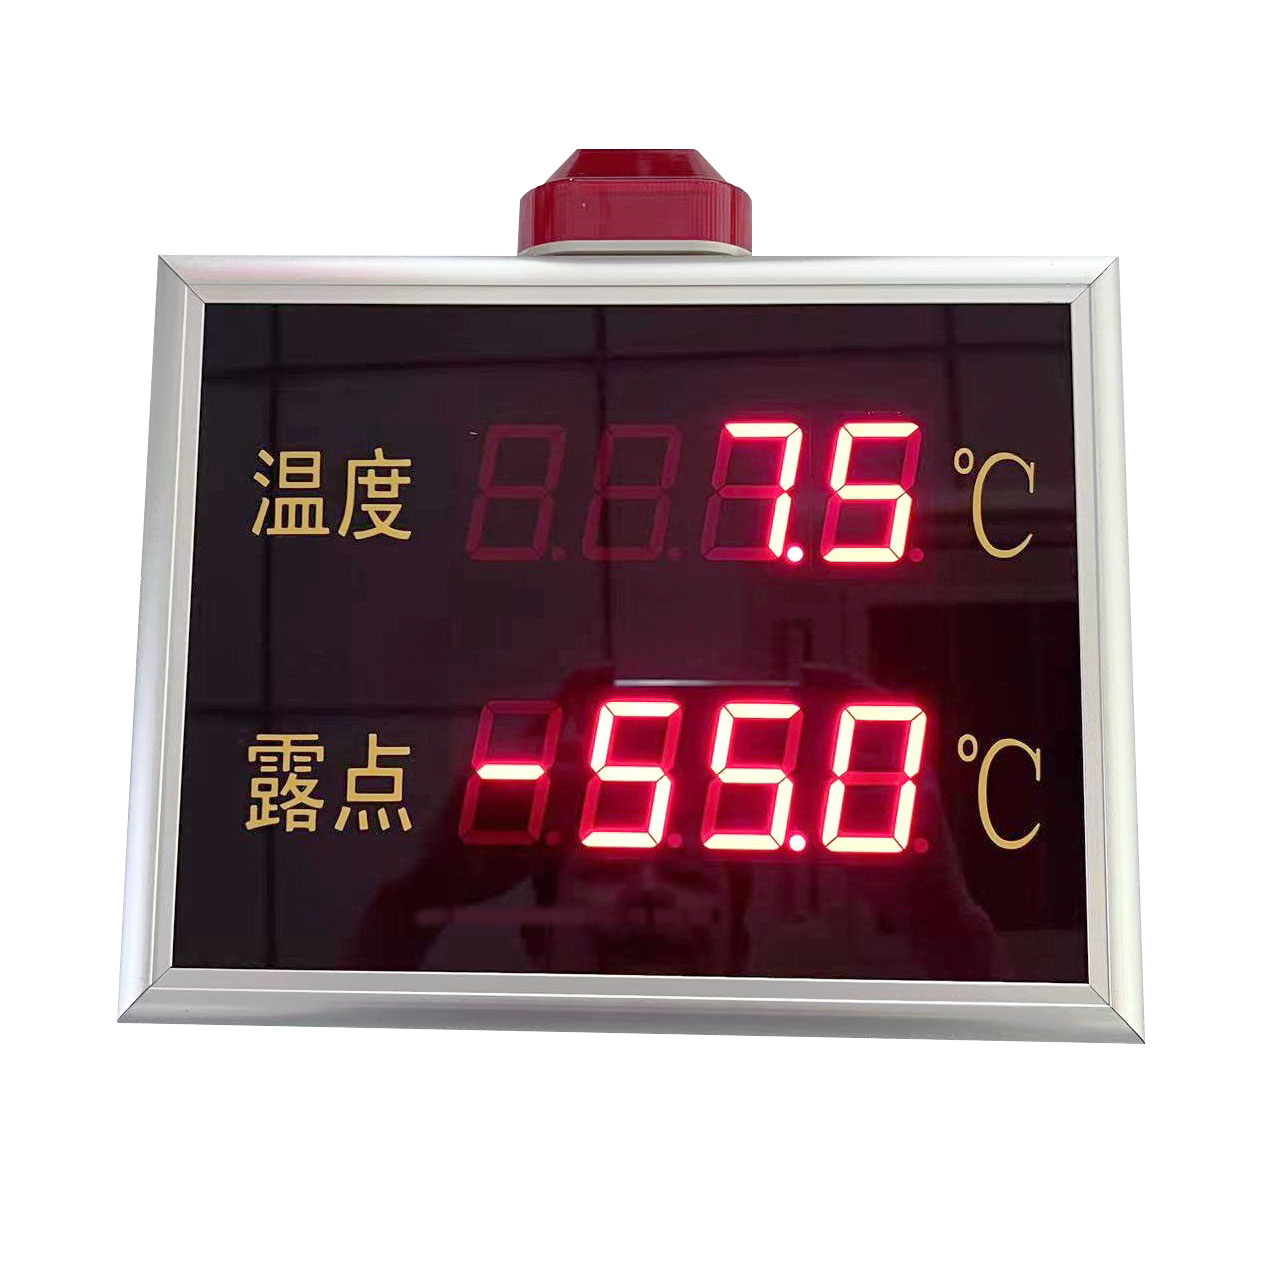 溫度露點監測顯示大屏HKT800